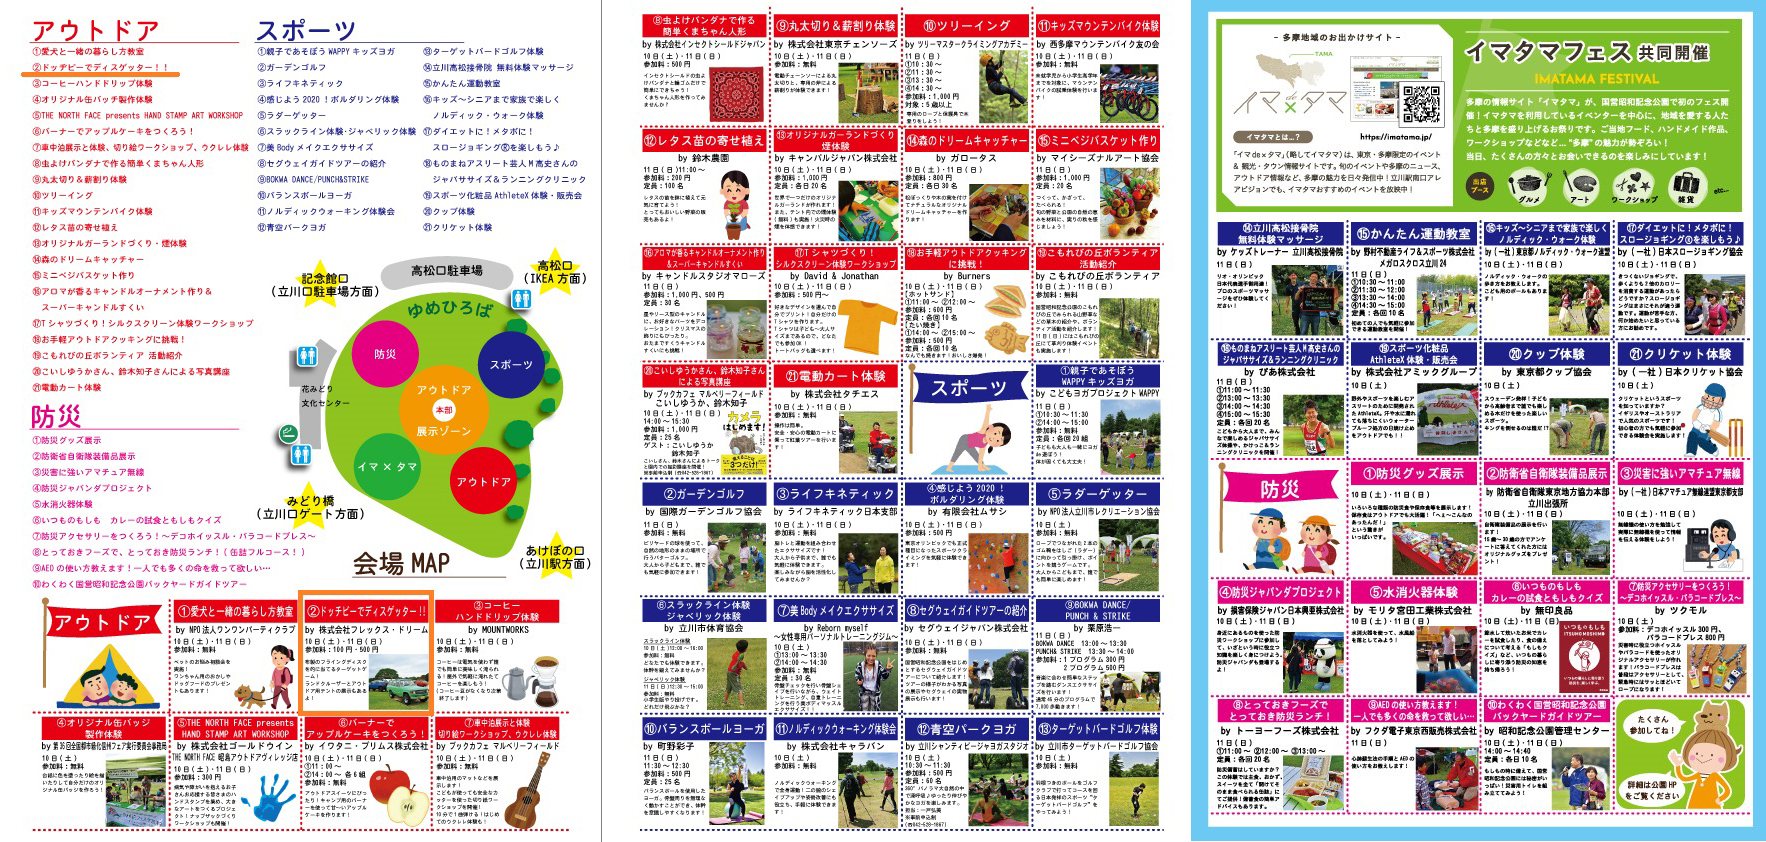 アウトドアフェスティバル2018 in国営昭和記念公園 会場マップ・イベント内容一覧（パンフレット）